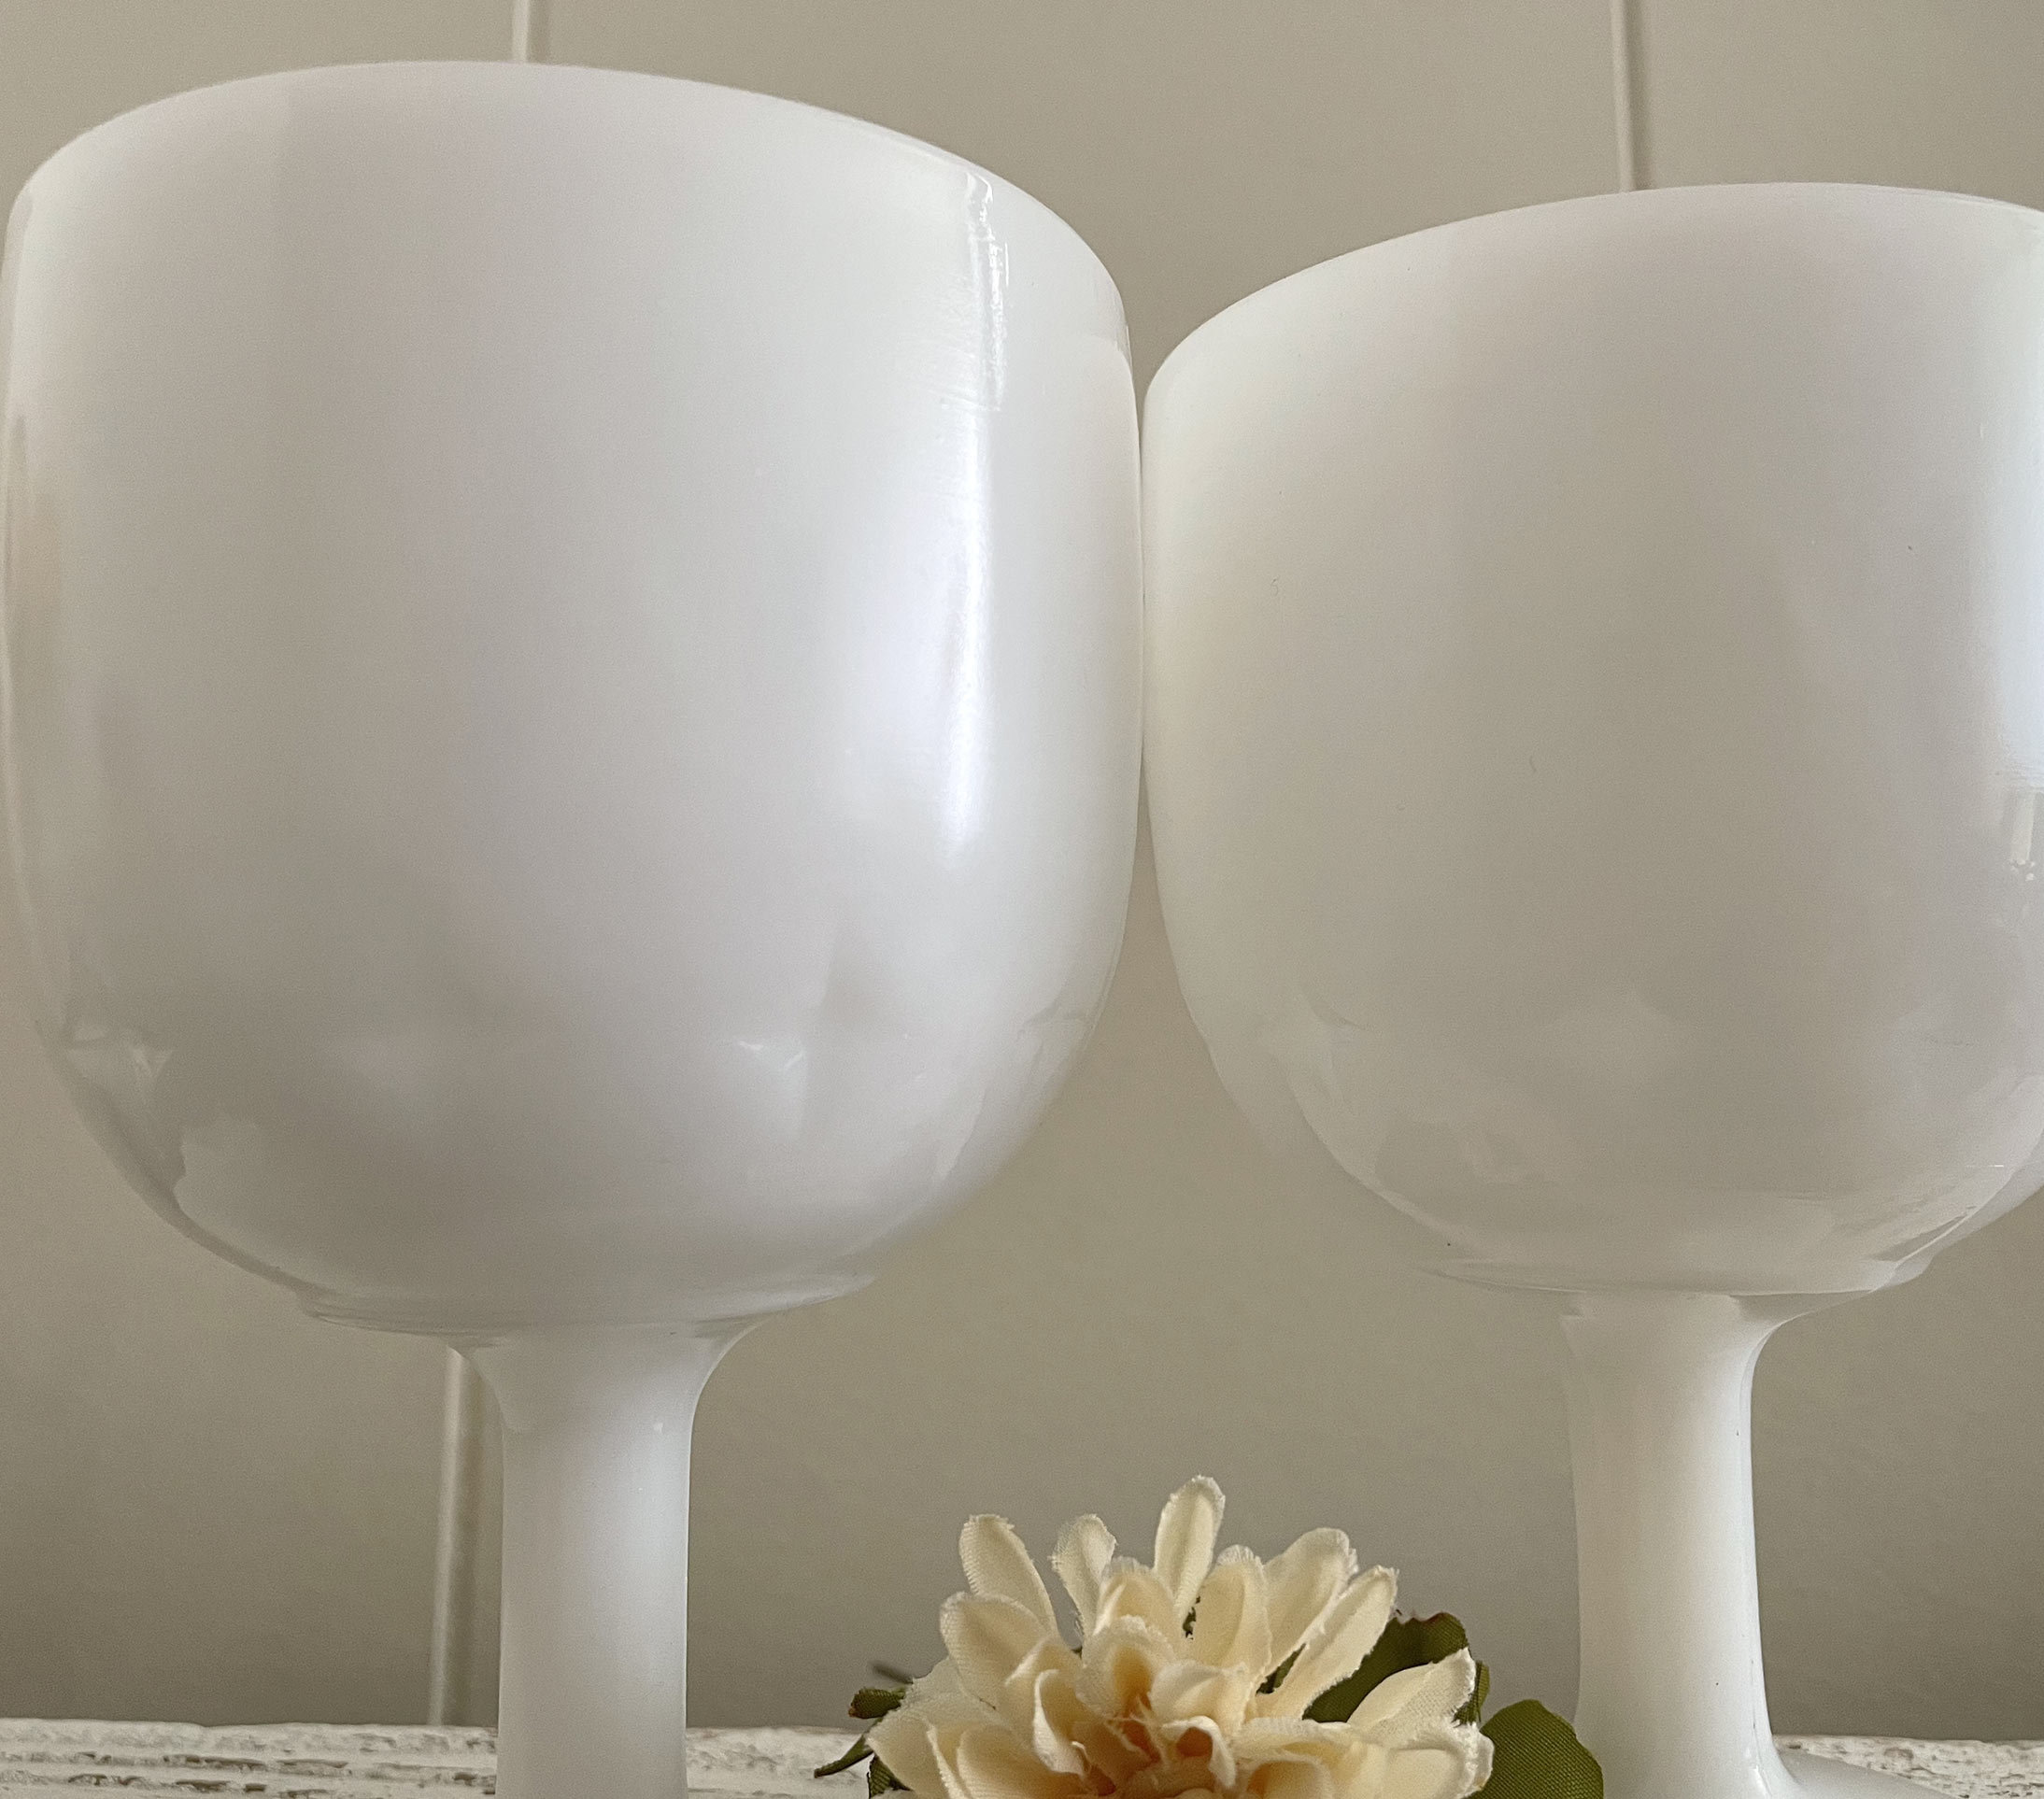 SET of 2 Large Milk Glass Goblets, Pedestal Glasses, Translucent